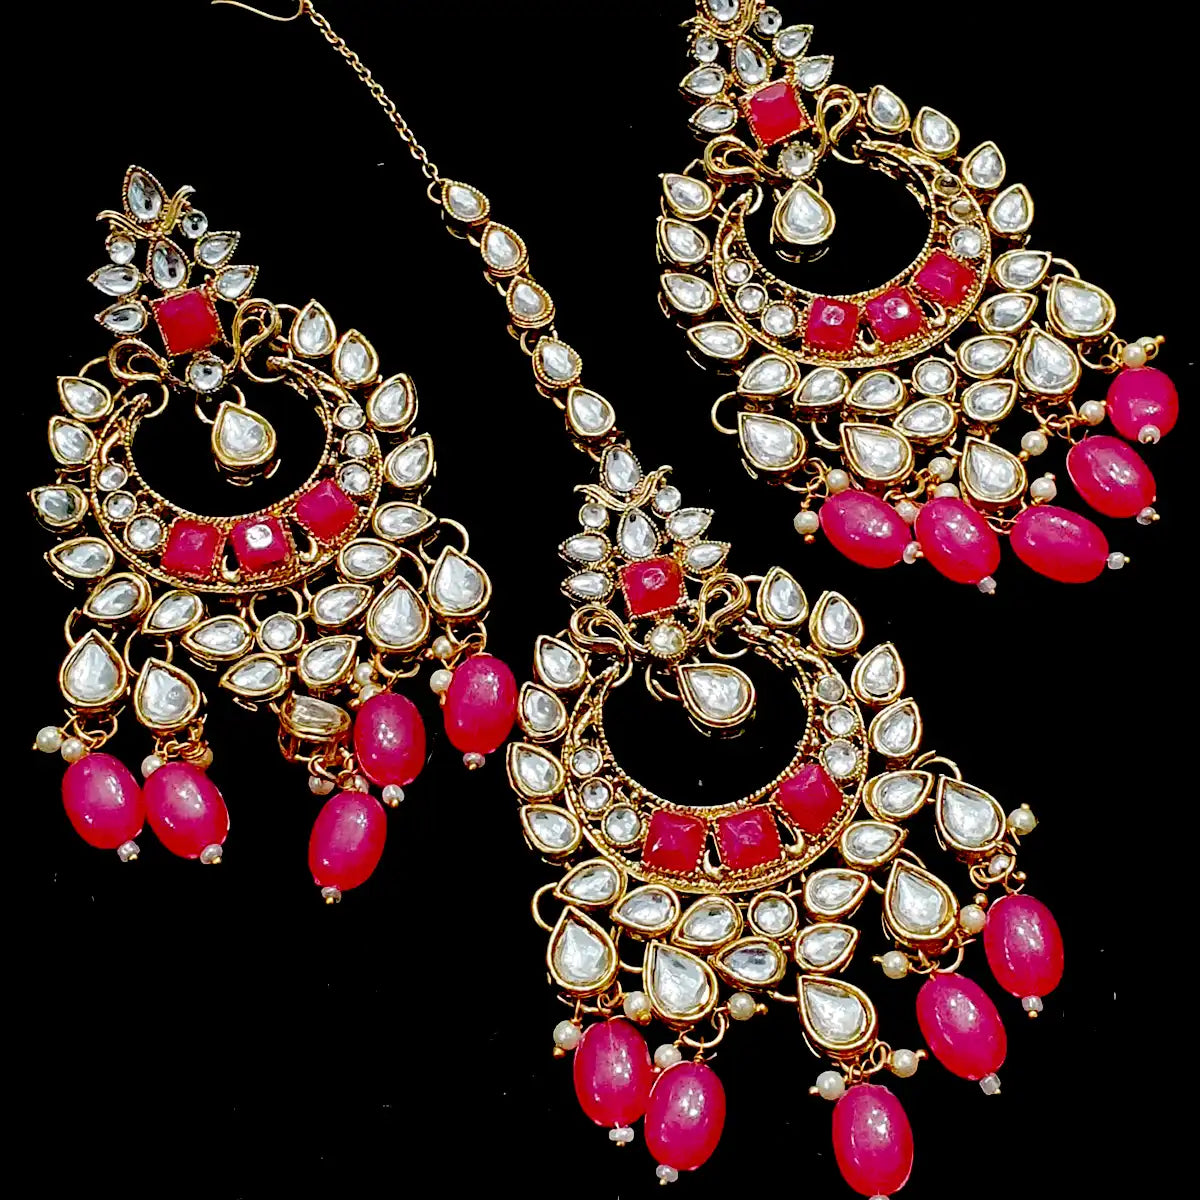 balas earrings price in Pakistan njc-005 red